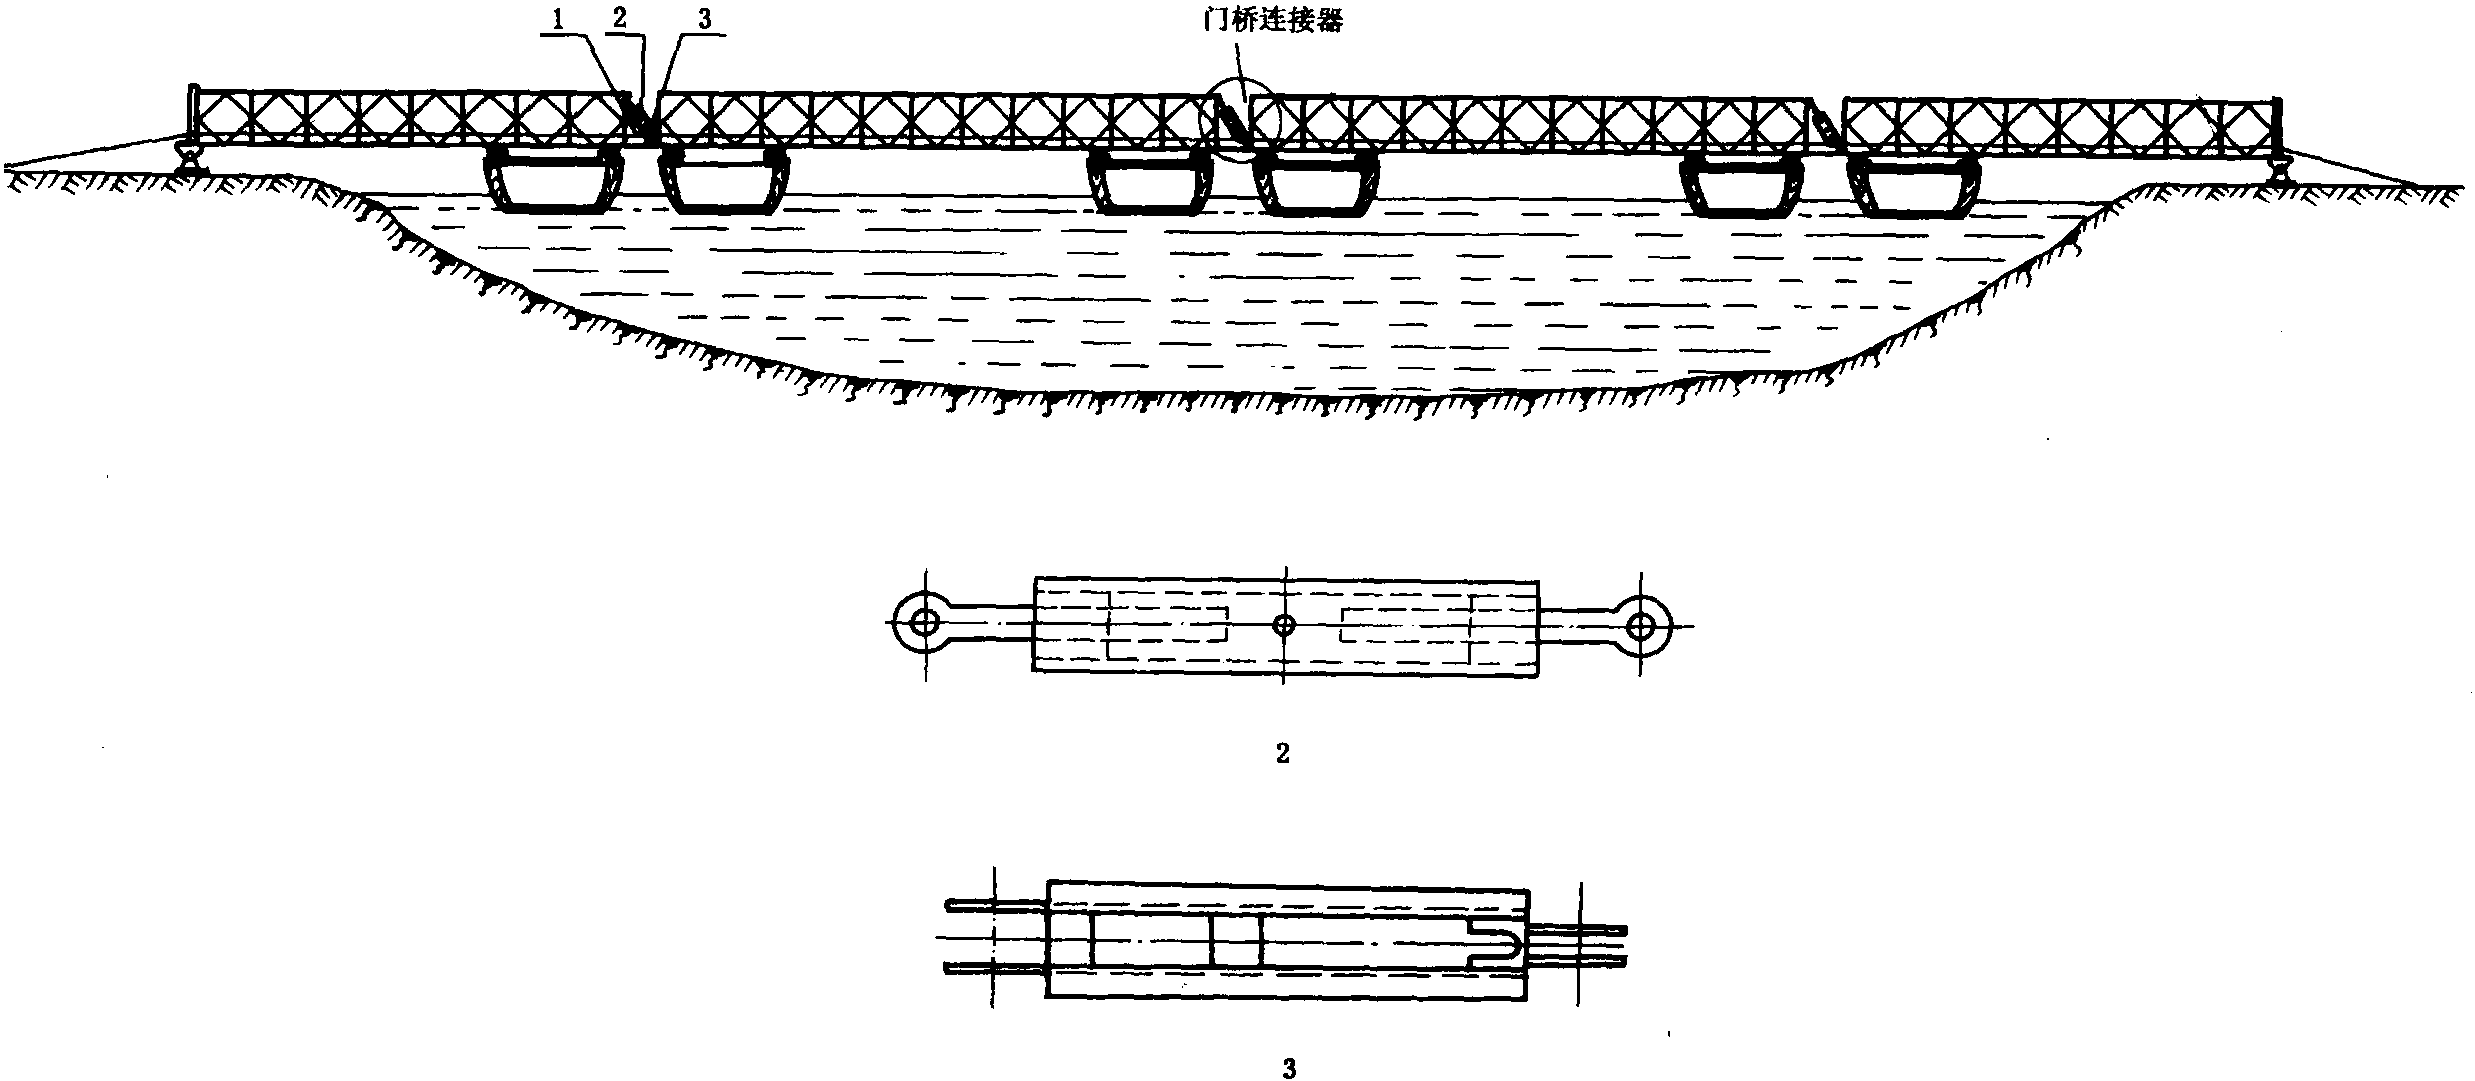 第二节 浮桥的桥节门桥构造和门桥之间的连接